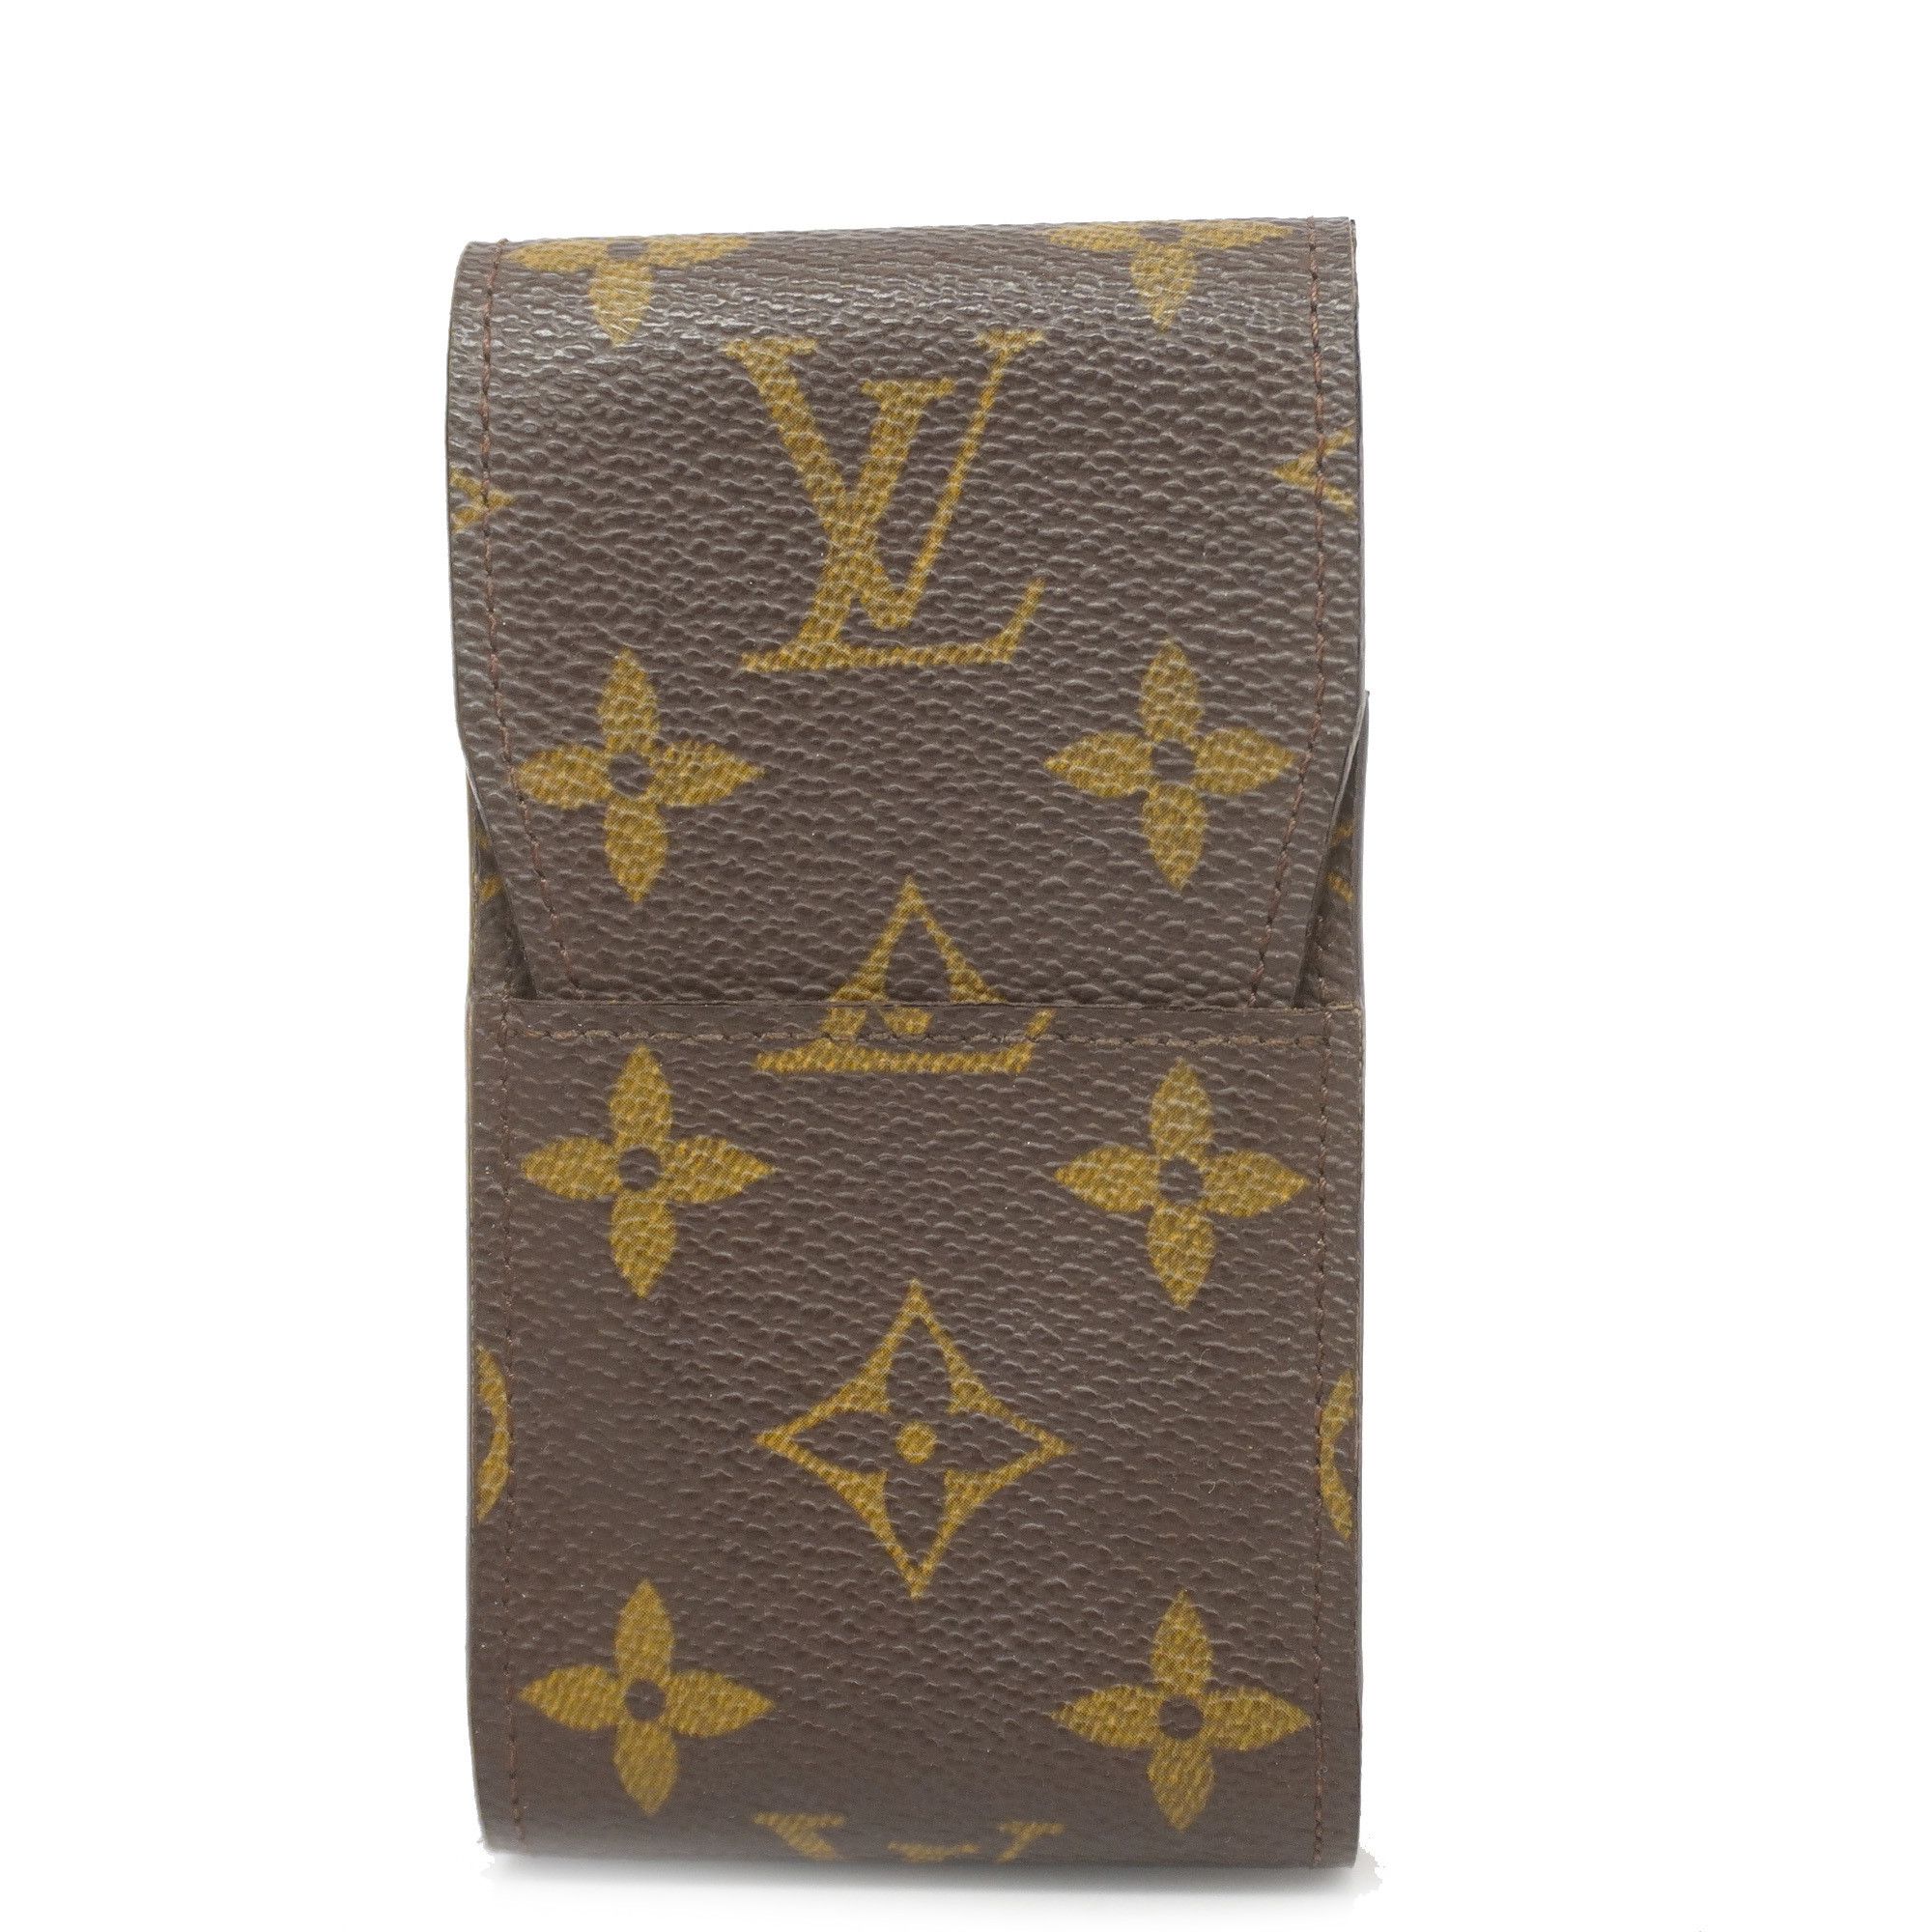 LOUIS VUITTON Shoulder Strap XL J02331 Monogram Canvas Leather Brown Black  Gold Hardware Replacement Vuitton